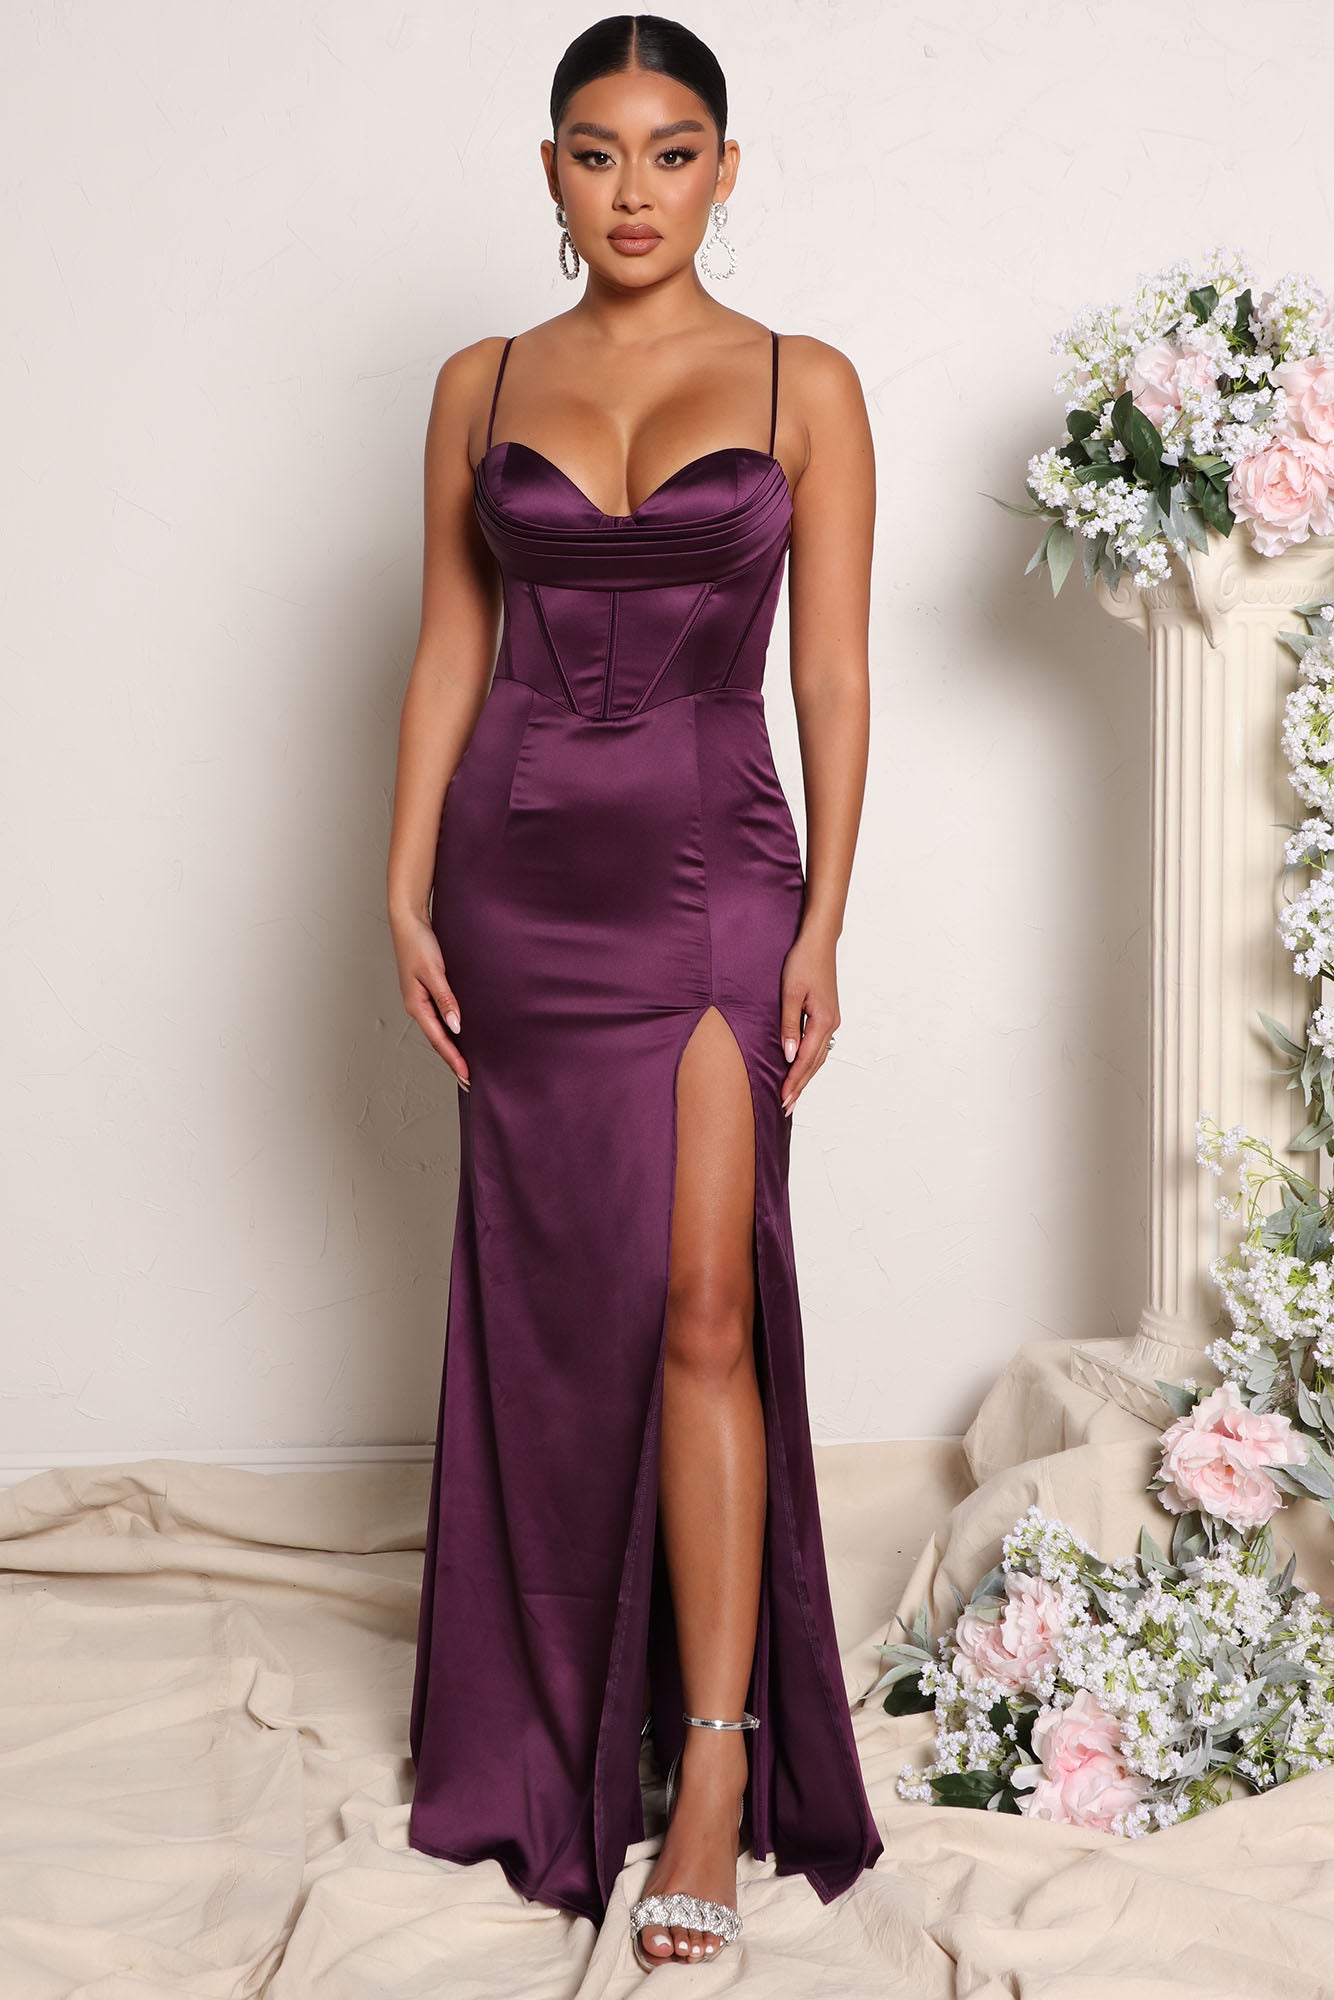 Be Your Girl Satin Maxi Dress - Lavender, Fashion Nova, Dresses